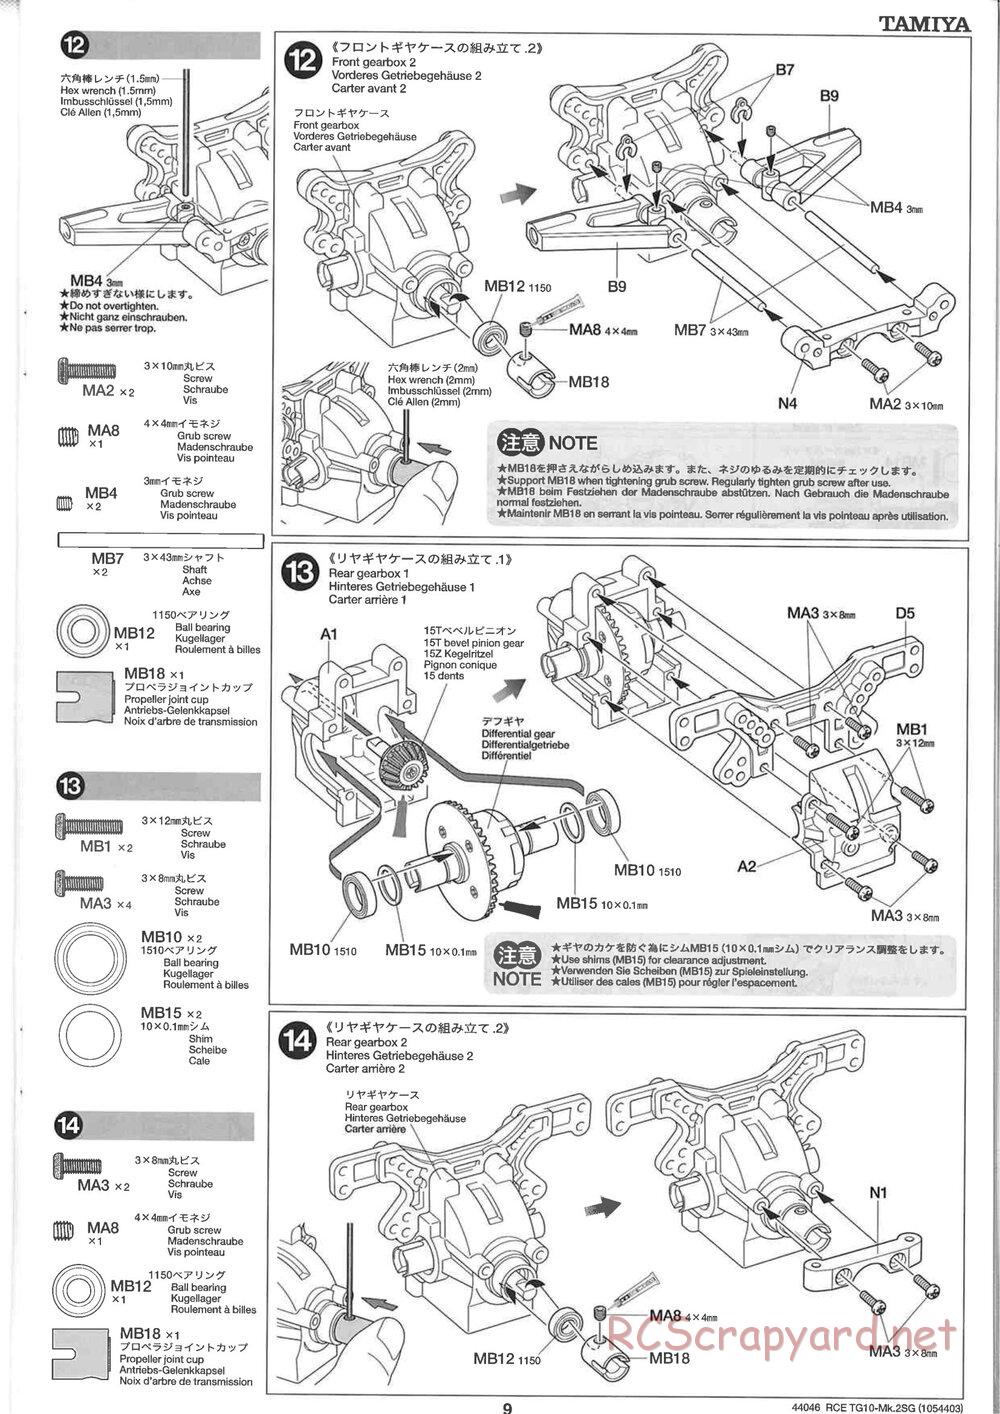 Tamiya - TG10 Mk.2SG Chassis - Manual - Page 9